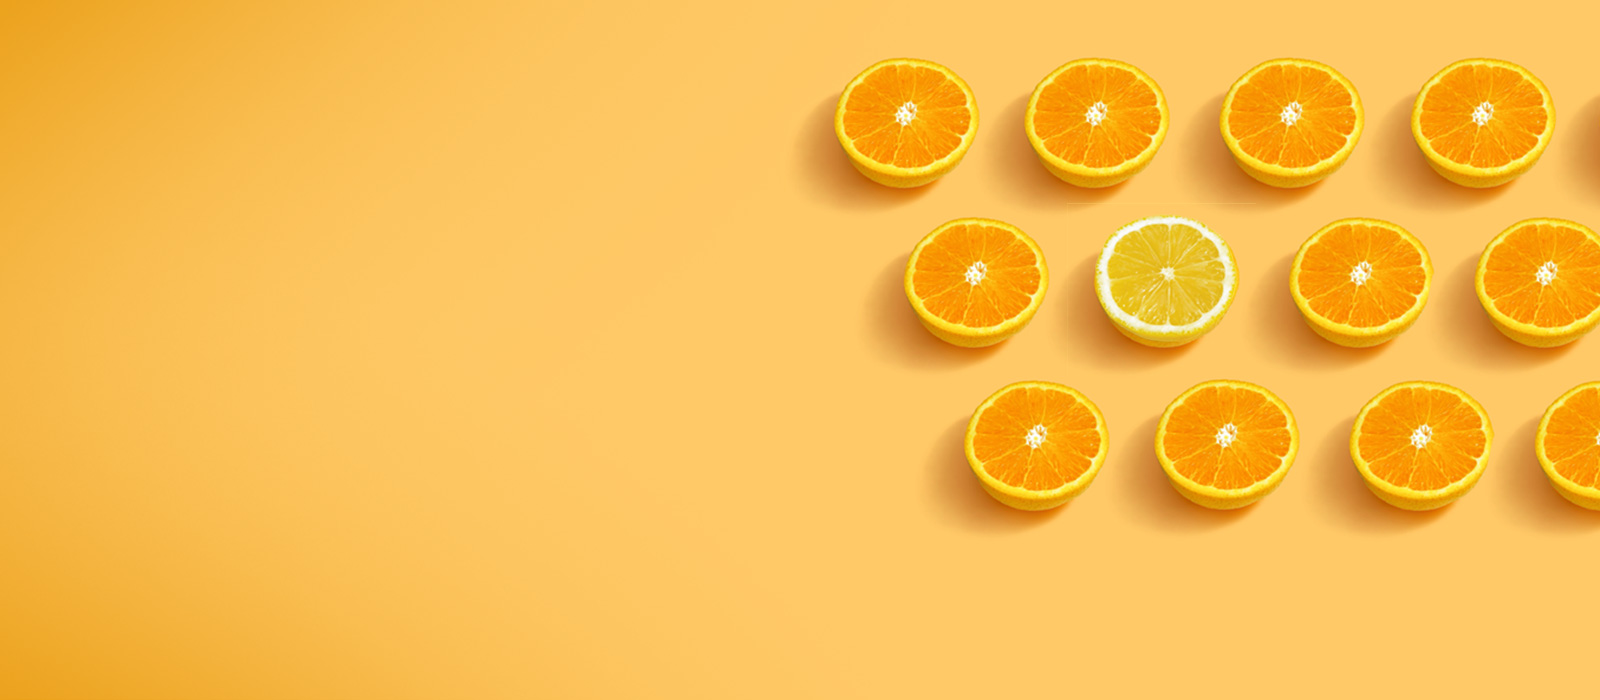 oranges and a lemon concept